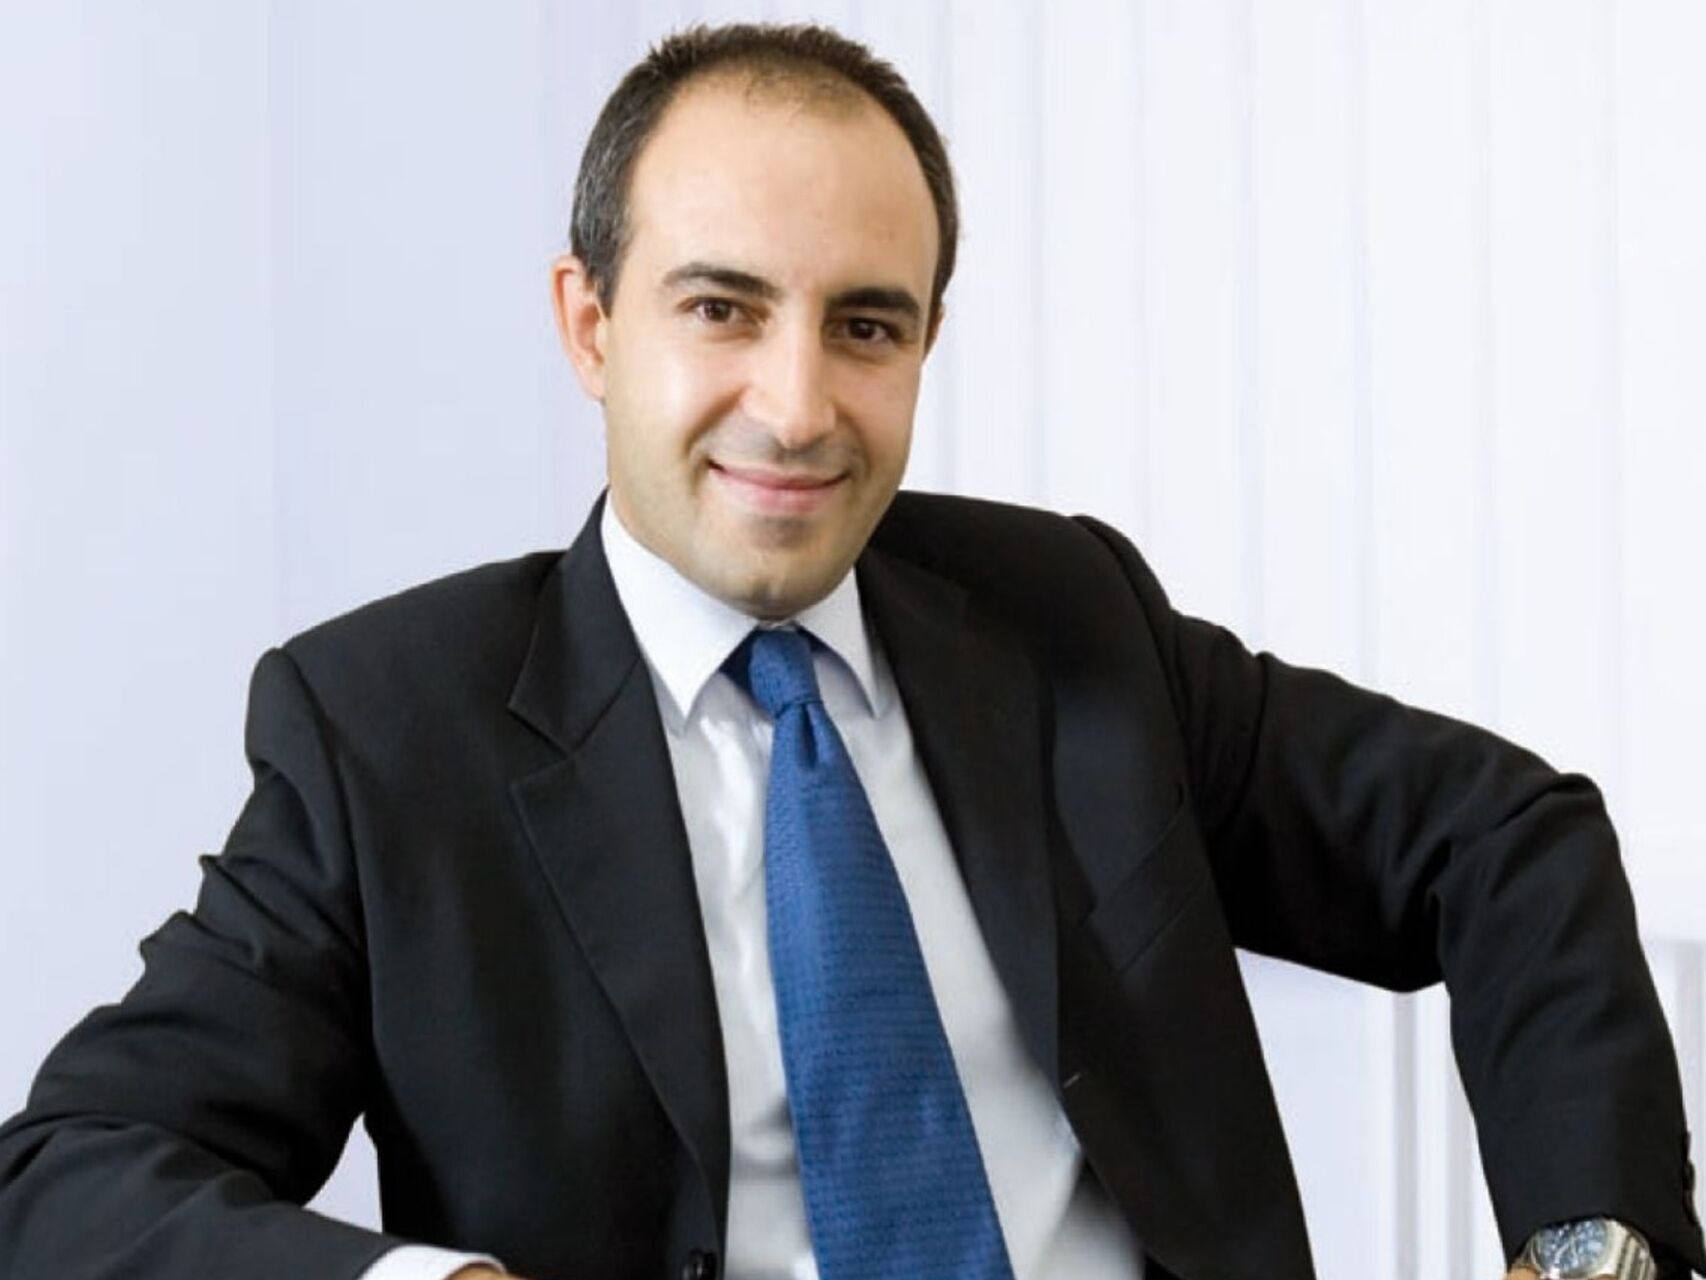 Fabio Pagano er administrerende direktør i SitoVivo